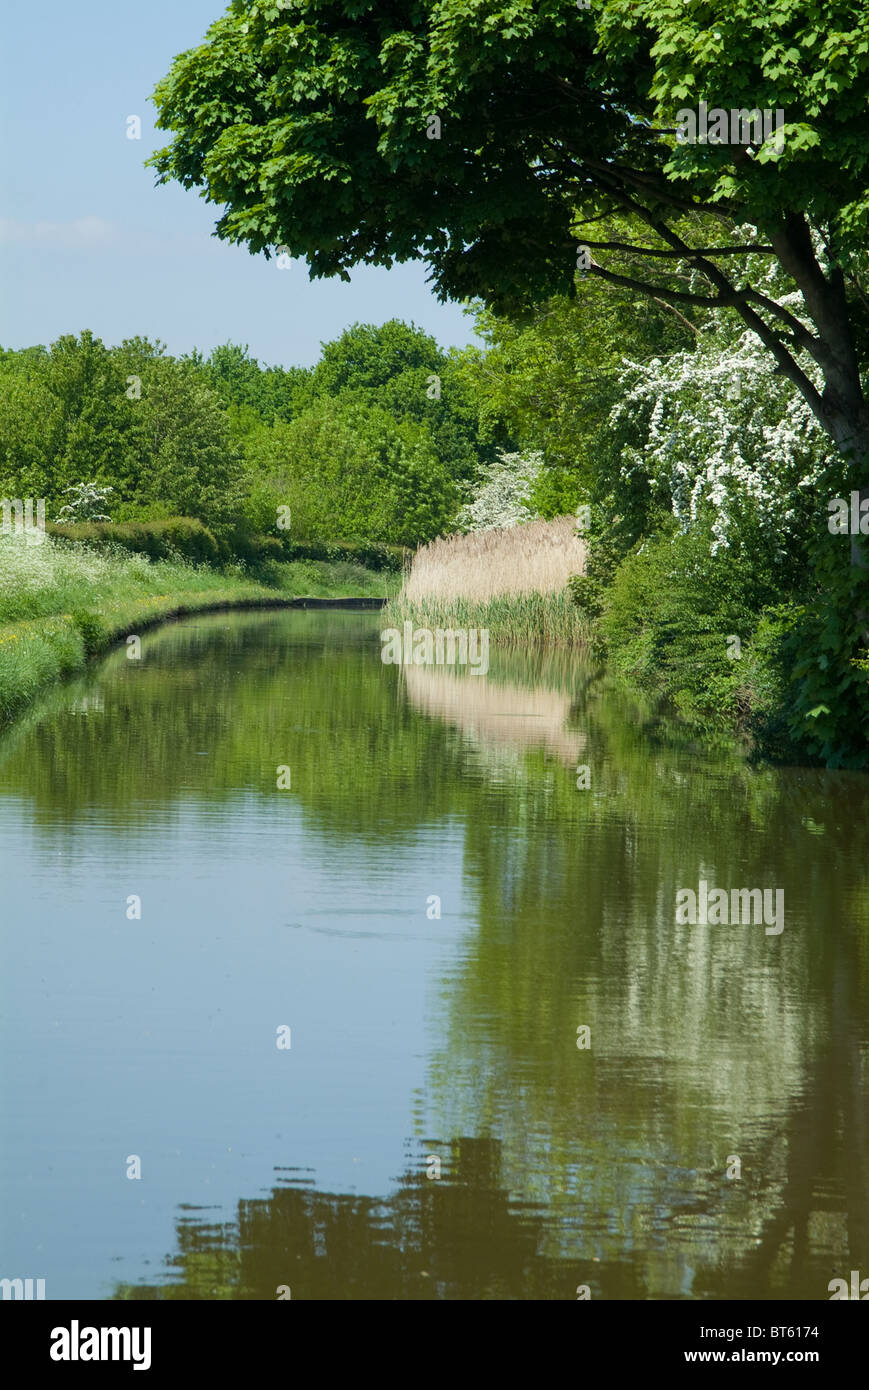 Sommer Kanalufer, UK GB Vereinigtes Königreich Großbritannien England Englisch blau, Fracht, Bau, England, Fuß, grünen Wald, Stockfoto